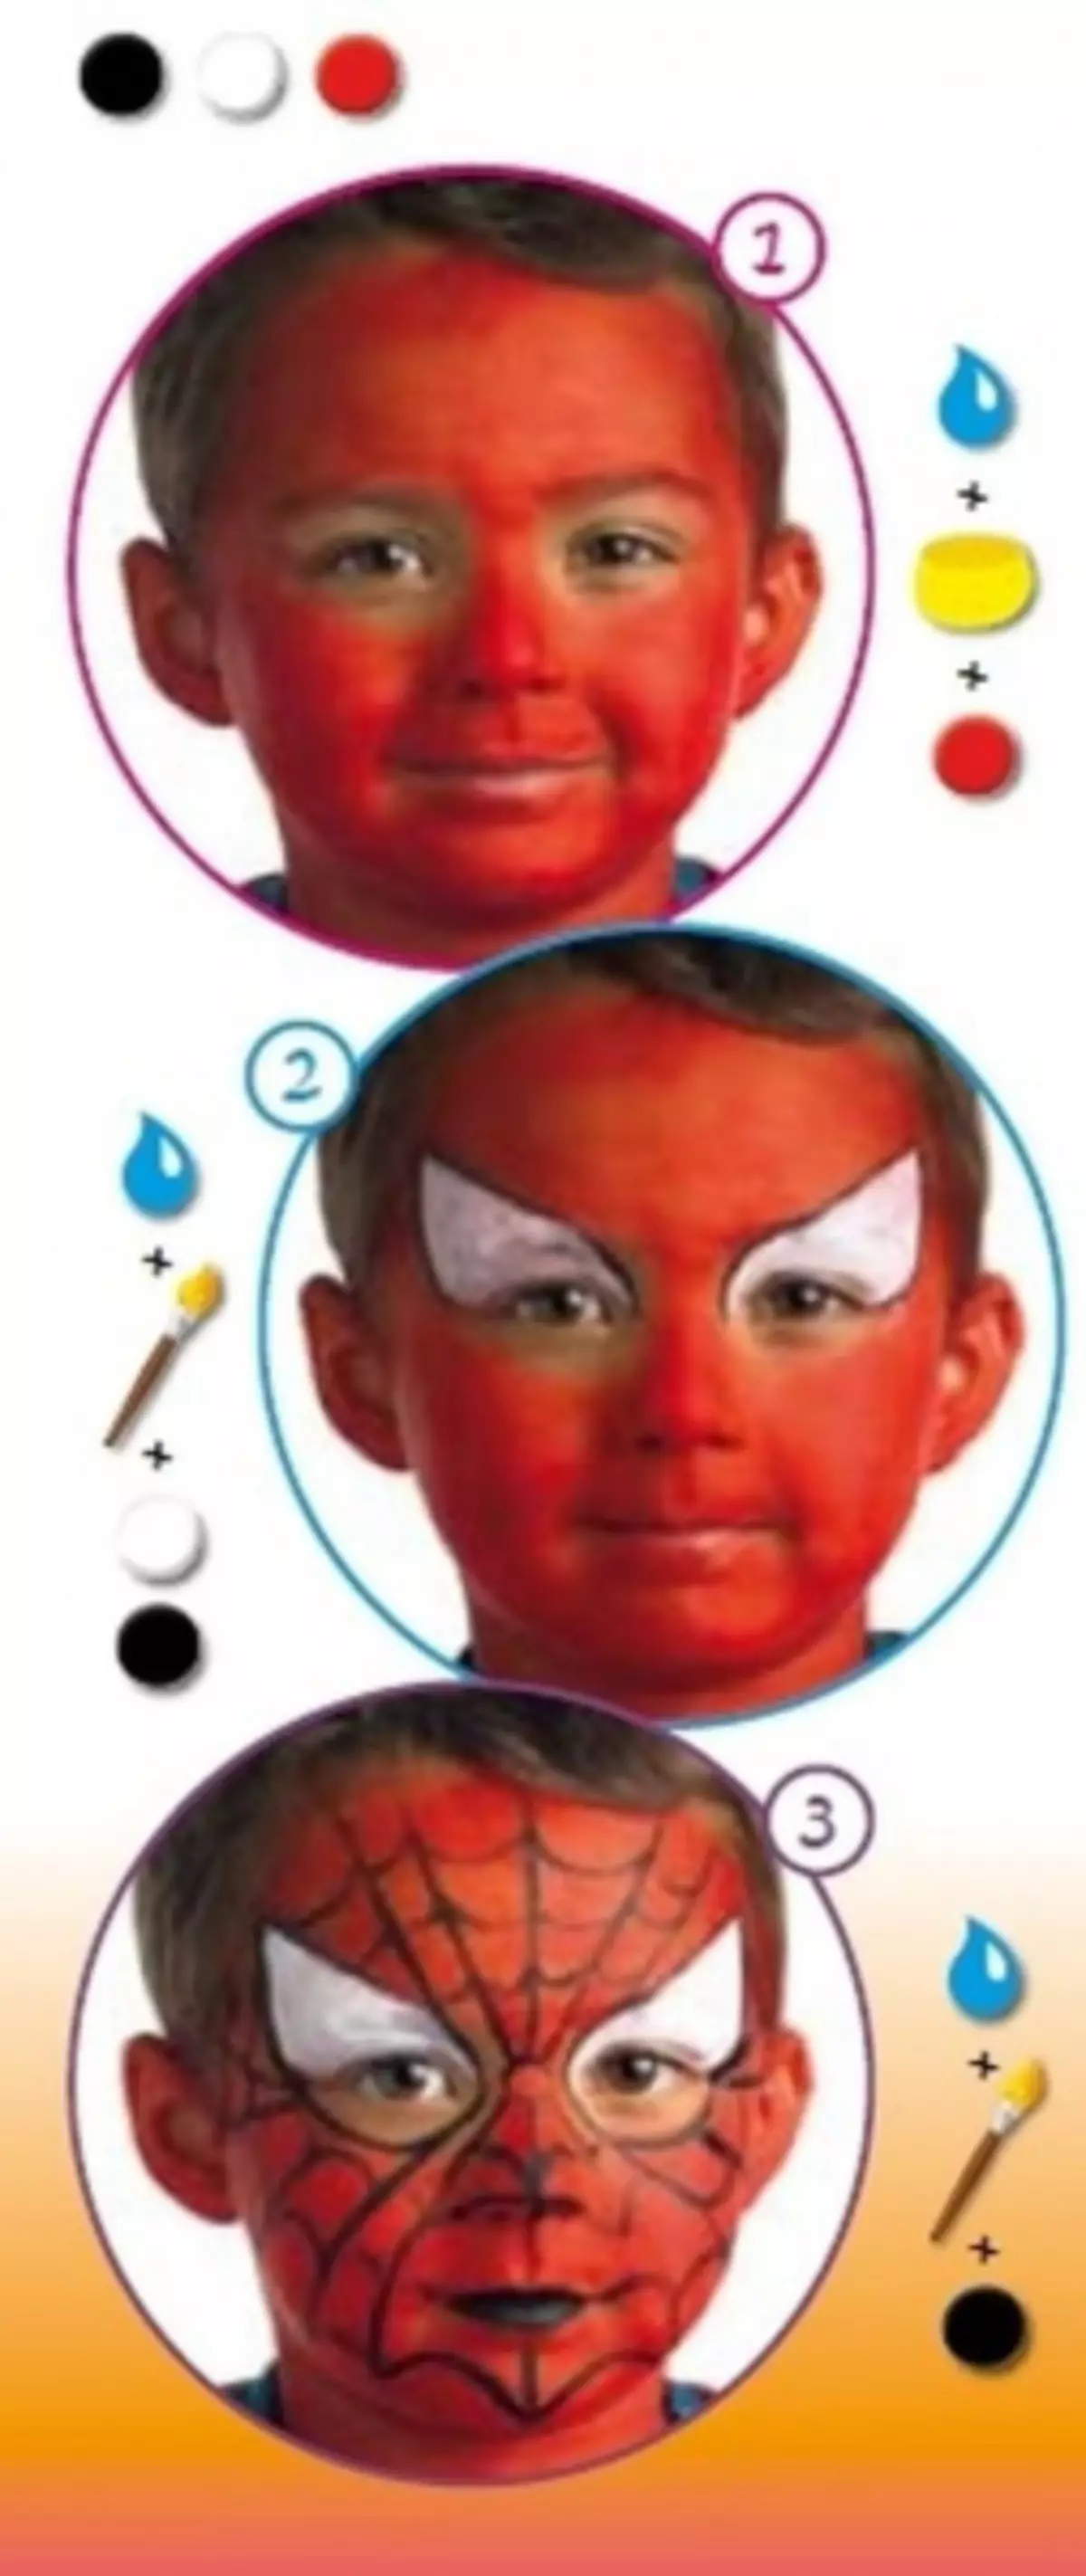 Μάσκα για ένα παιδί με τα χέρια του στο αποκριές με φωτογραφίες και βίντεο